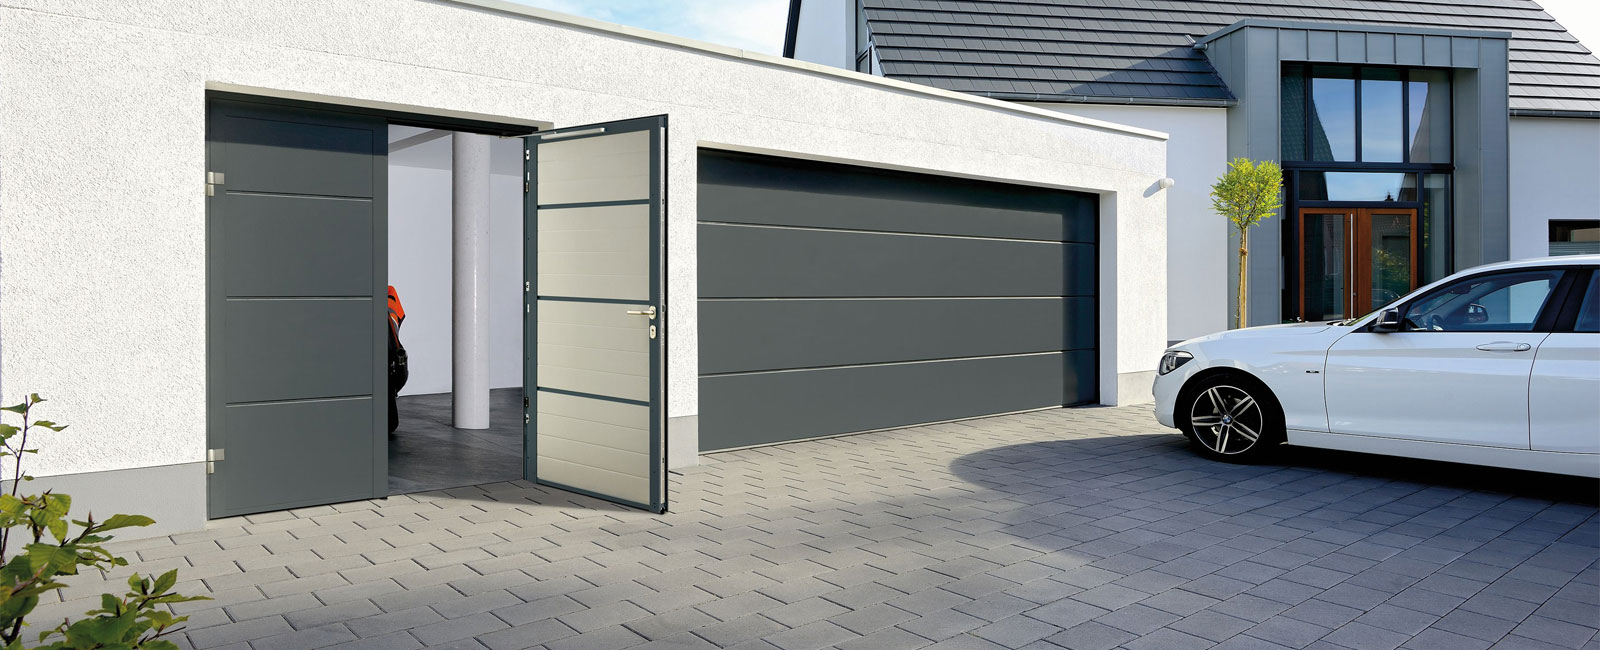 18 Popular Hormann garage door prices uk for Ideas